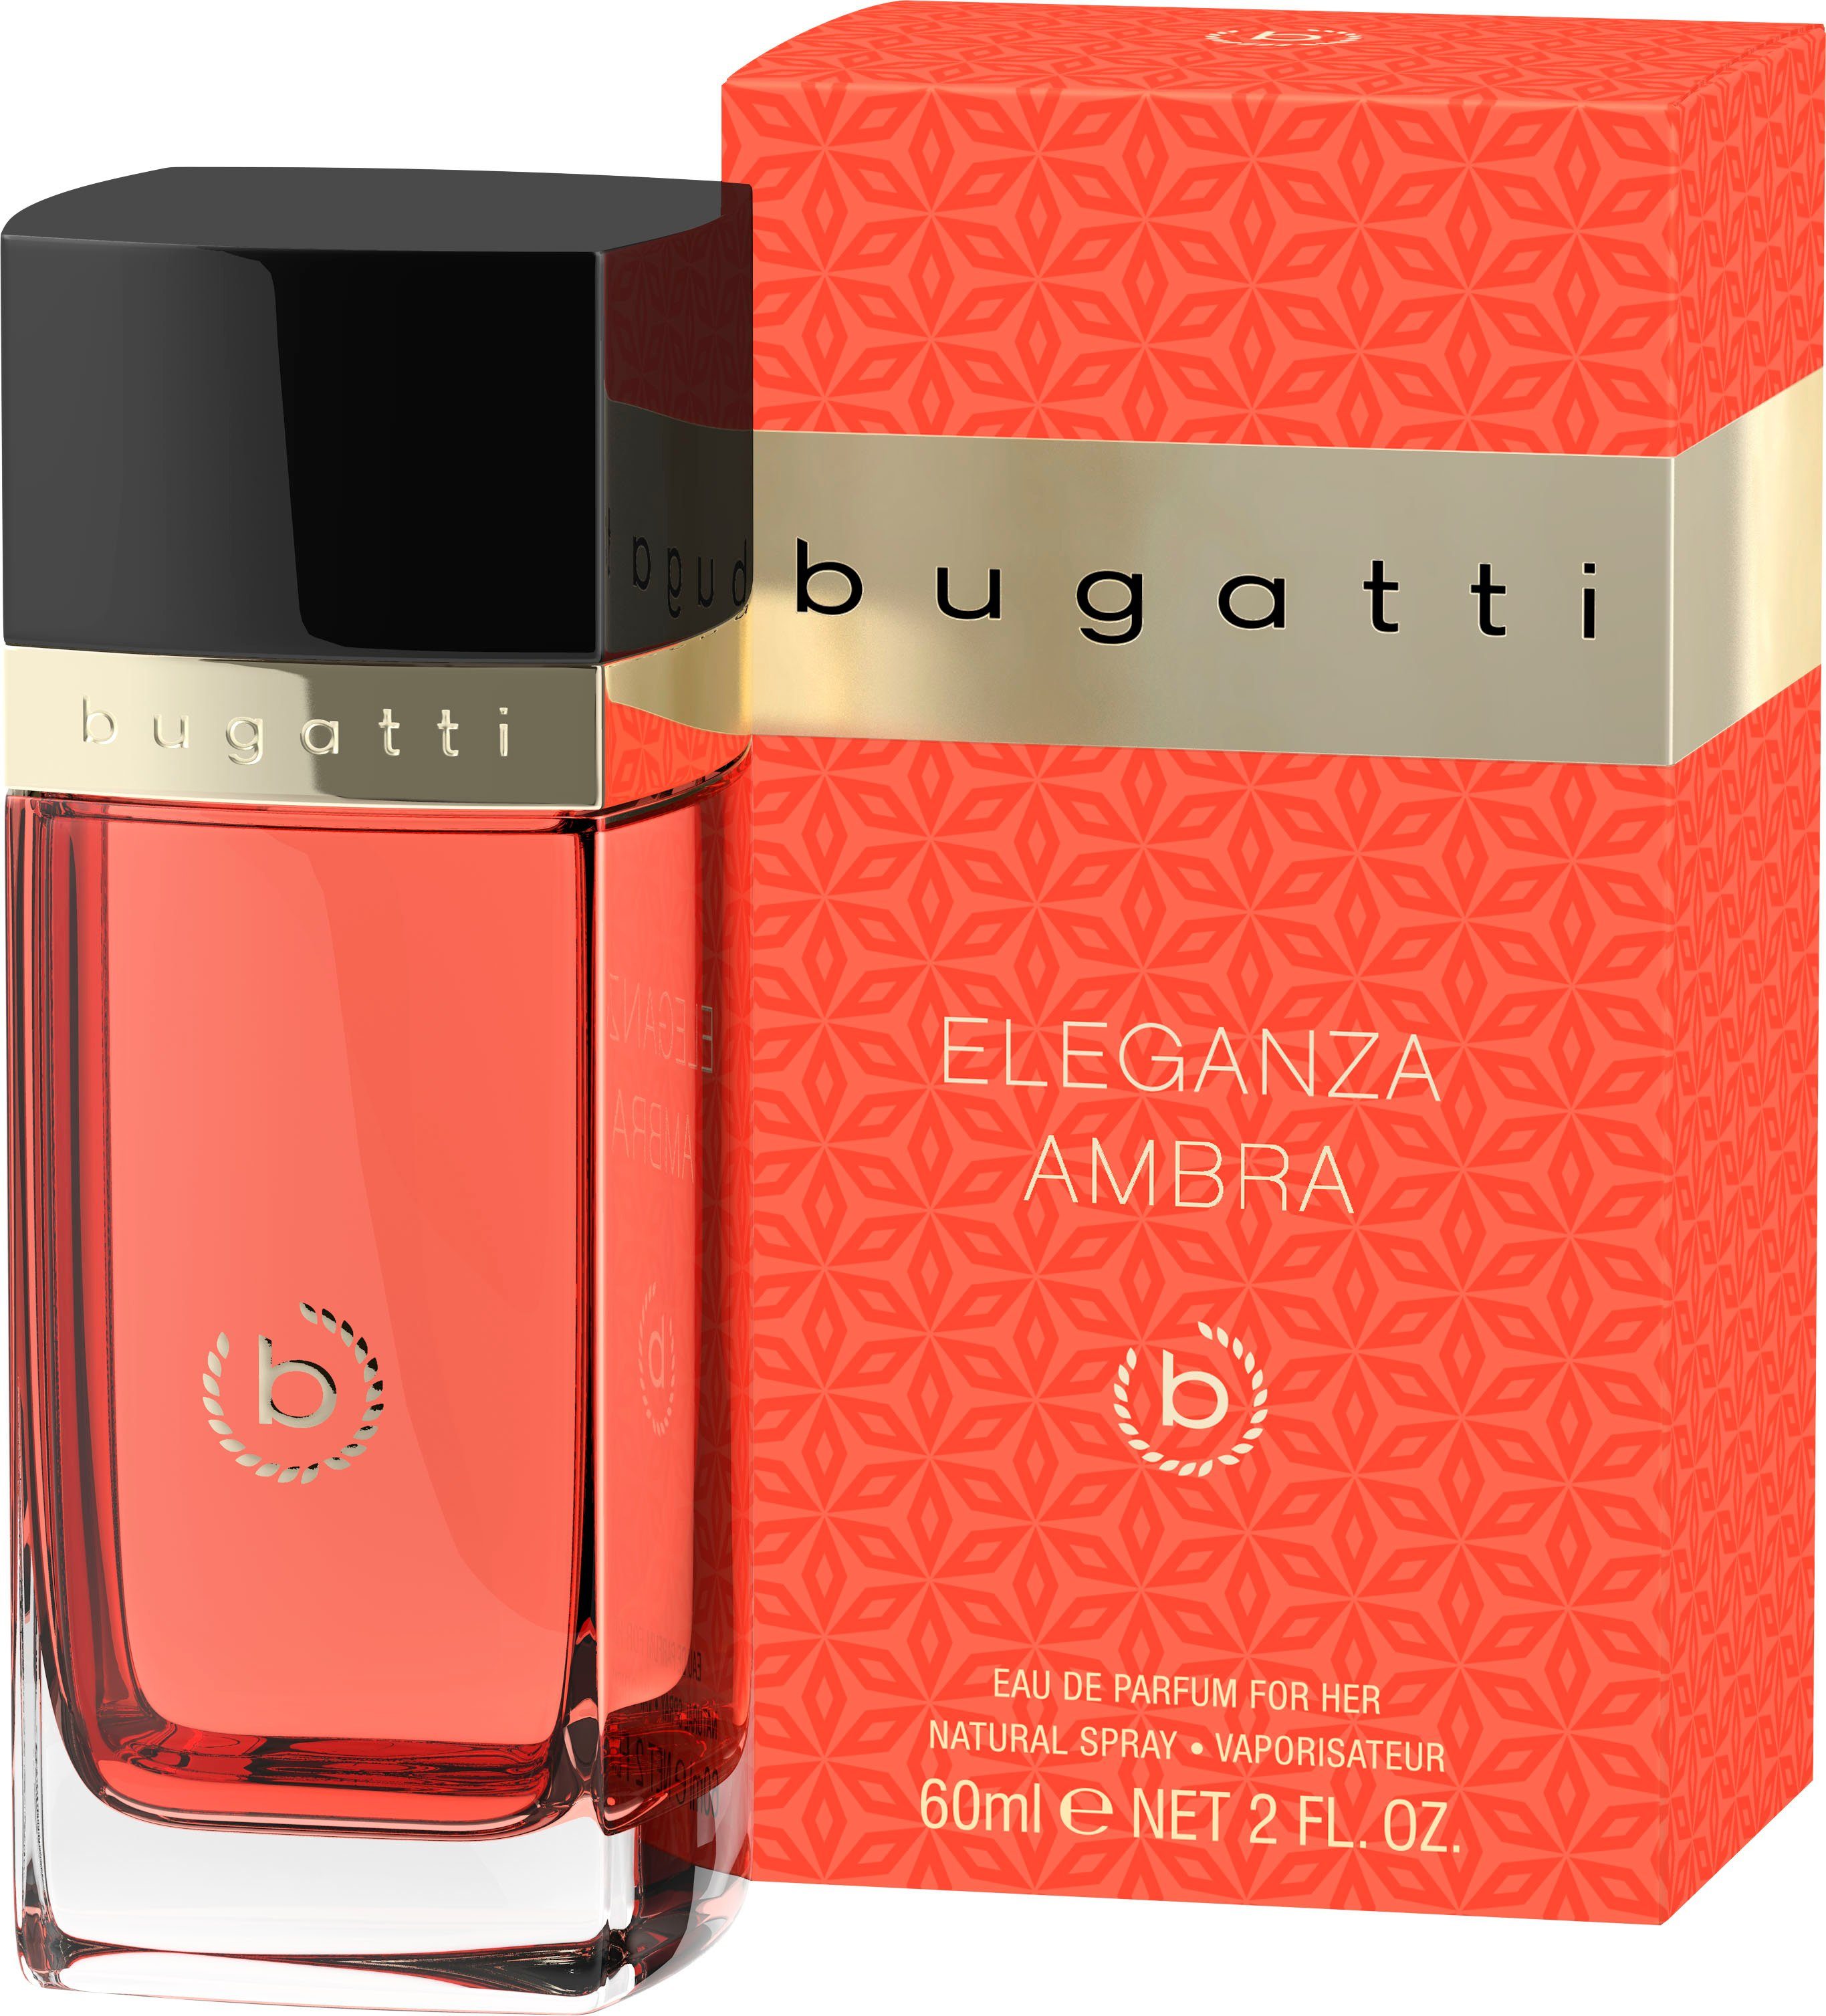 bugatti Eau de Ambra ml Parfum EdP for 60 BUGATTI Eleganza her